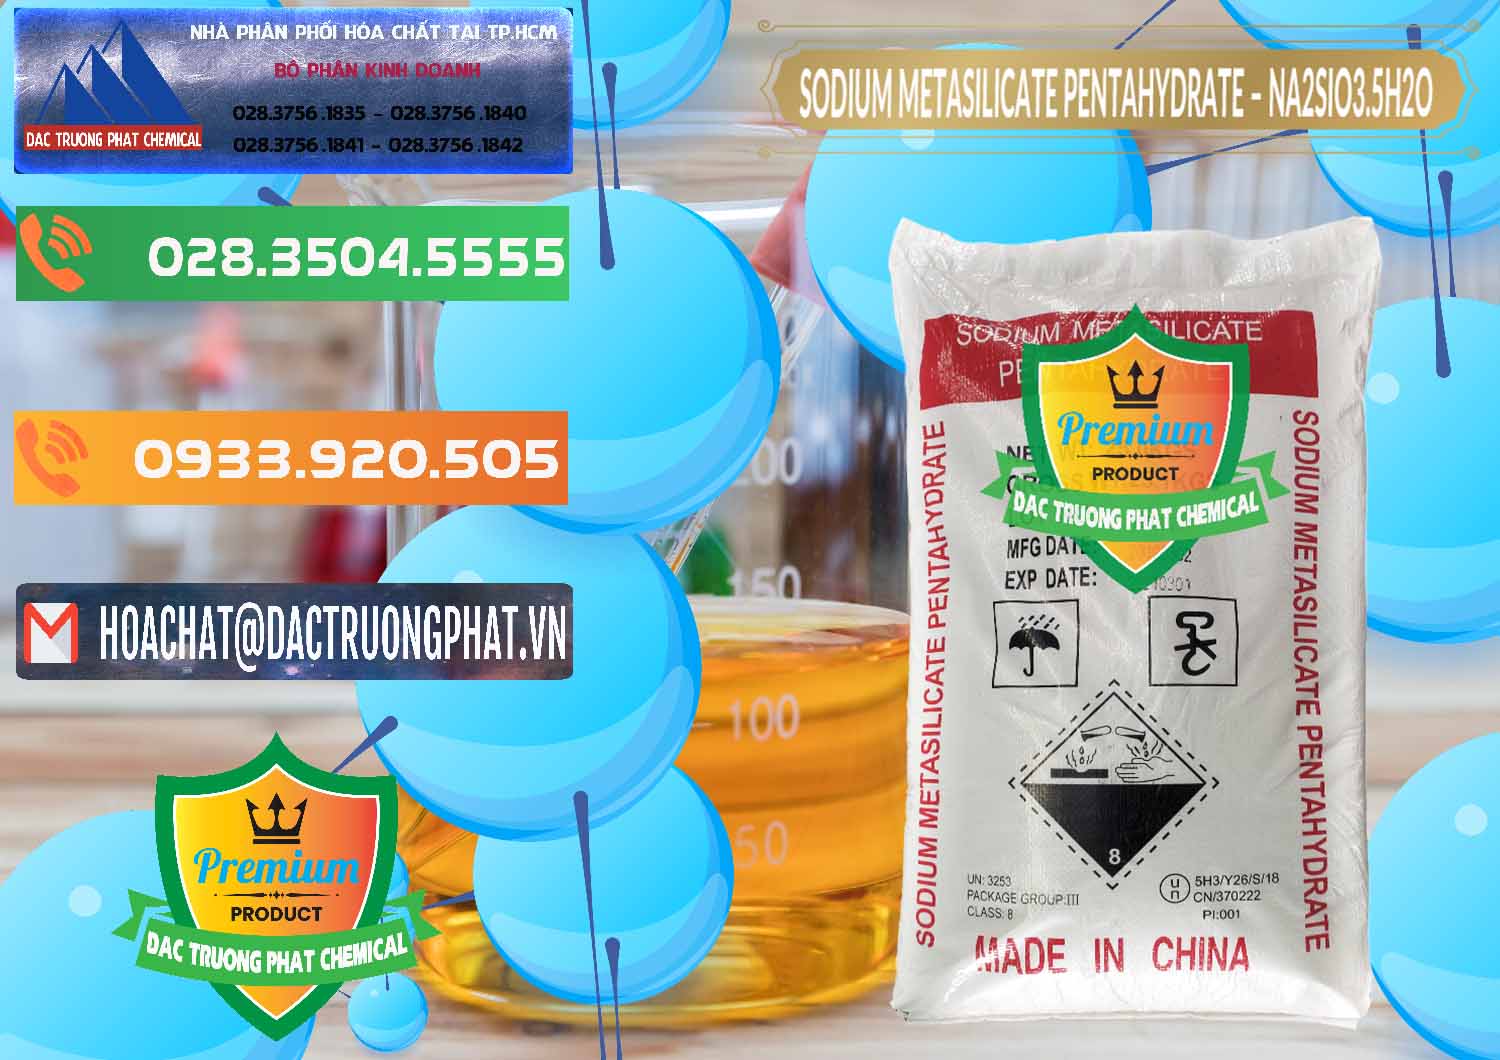 Cty chuyên bán & cung cấp Sodium Metasilicate Pentahydrate – Silicate Bột Trung Quốc China - 0147 - Đơn vị chuyên cung ứng - phân phối hóa chất tại TP.HCM - hoachatxulynuoc.com.vn